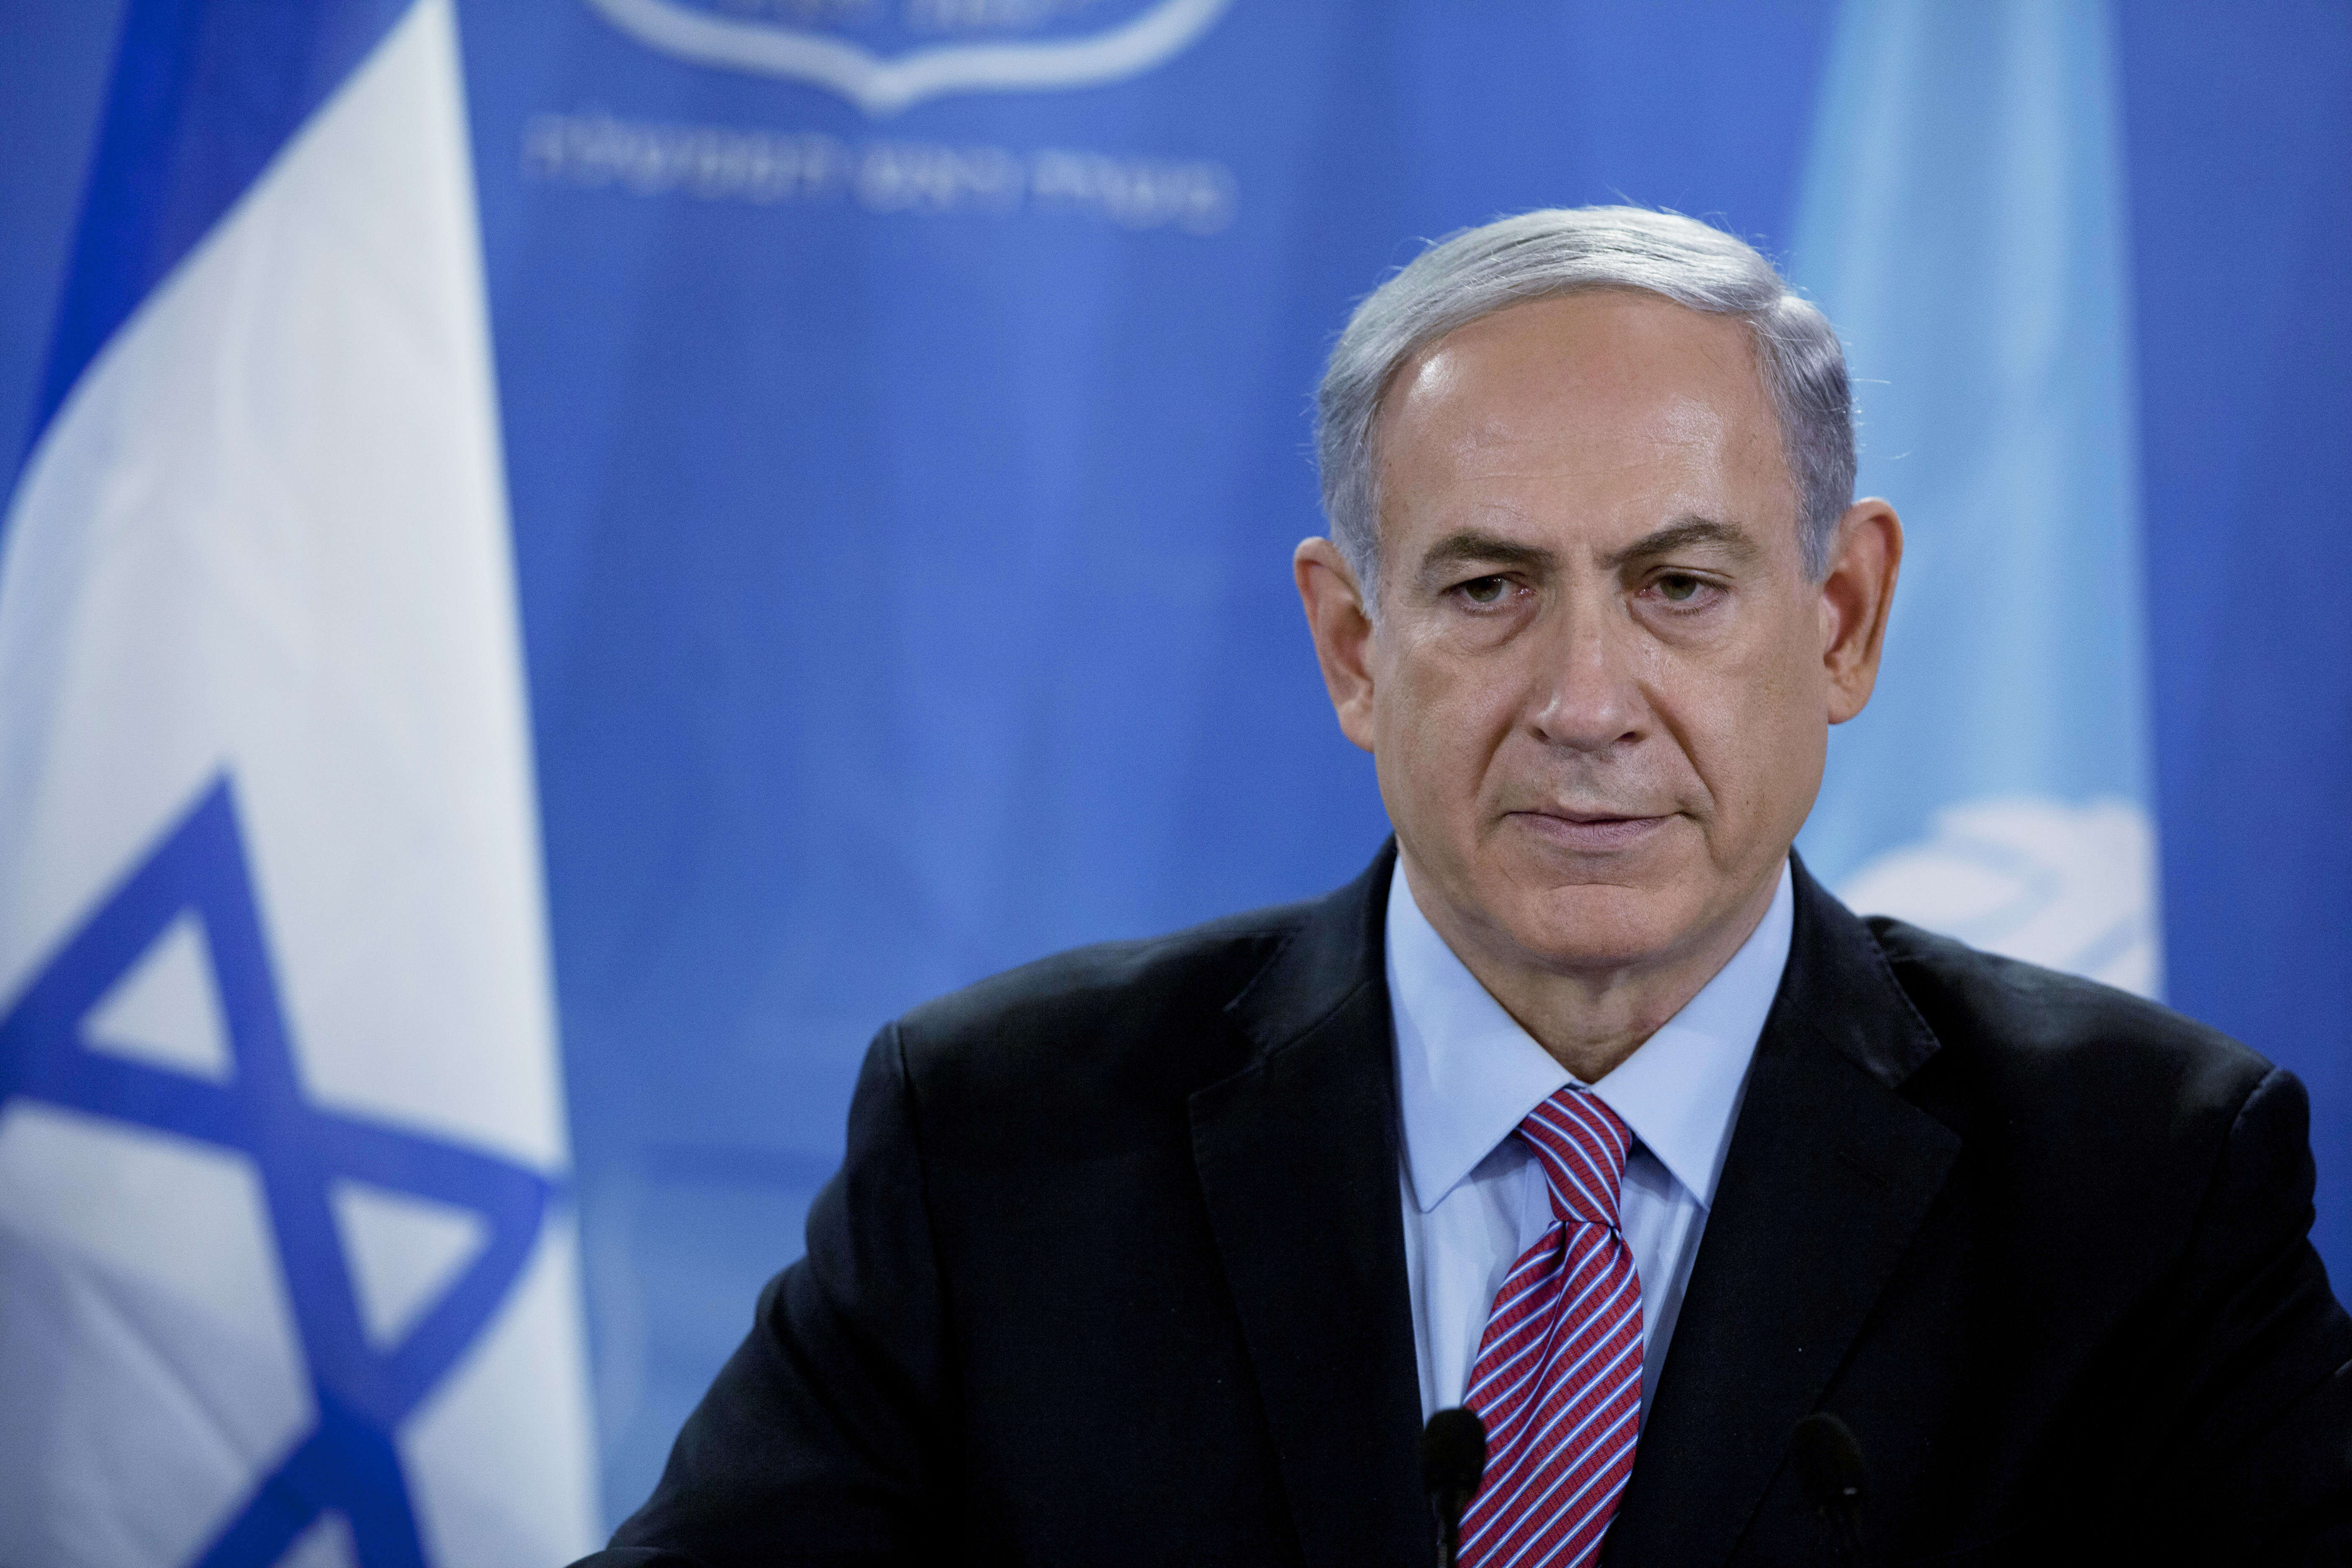 Israel PM Benjamin Netanyahu makes case on ISIS, Iran and ...